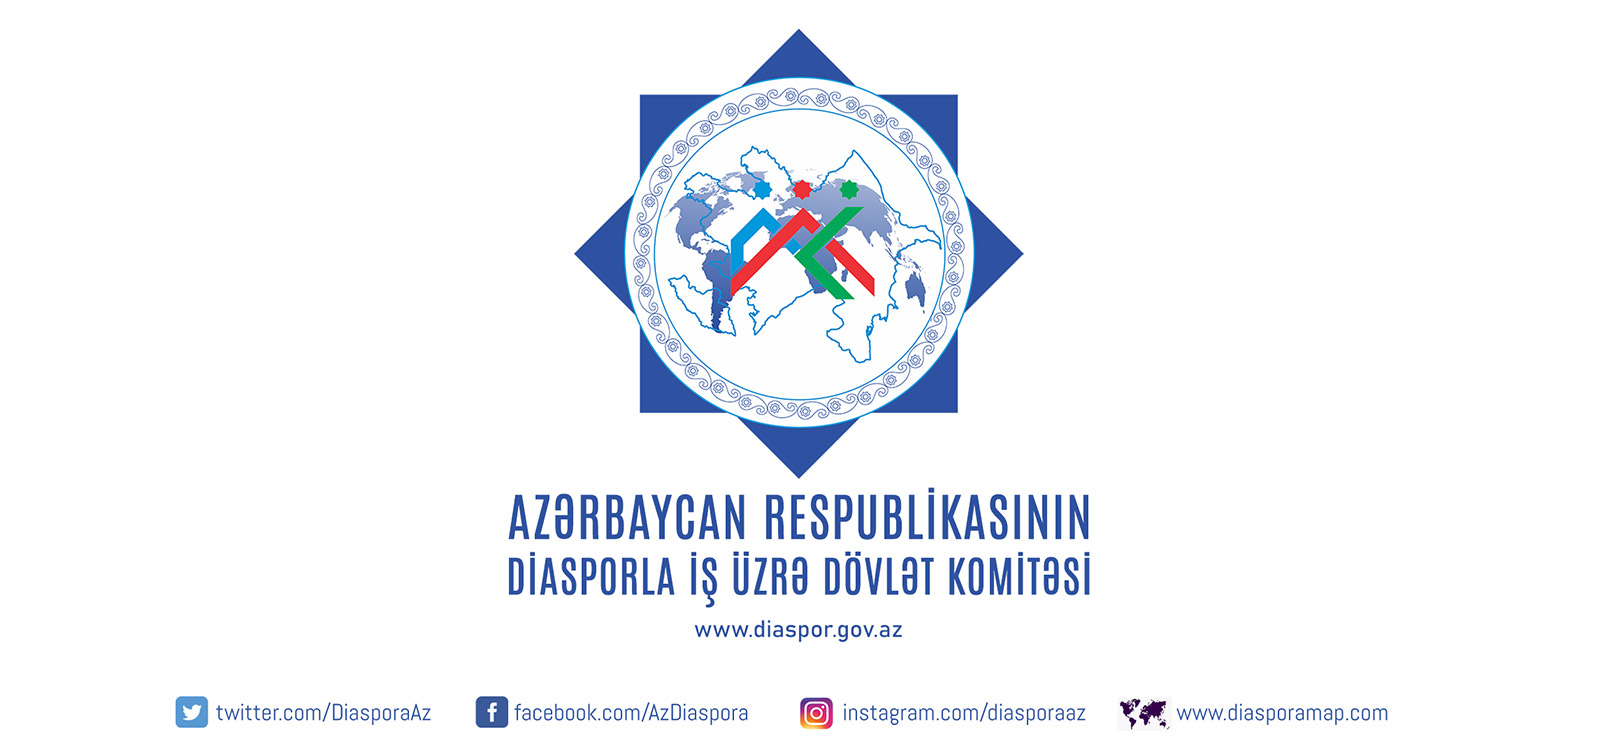 azərbaycan respublikasının diaspora ilə iş üzrə dövlət komitəsi